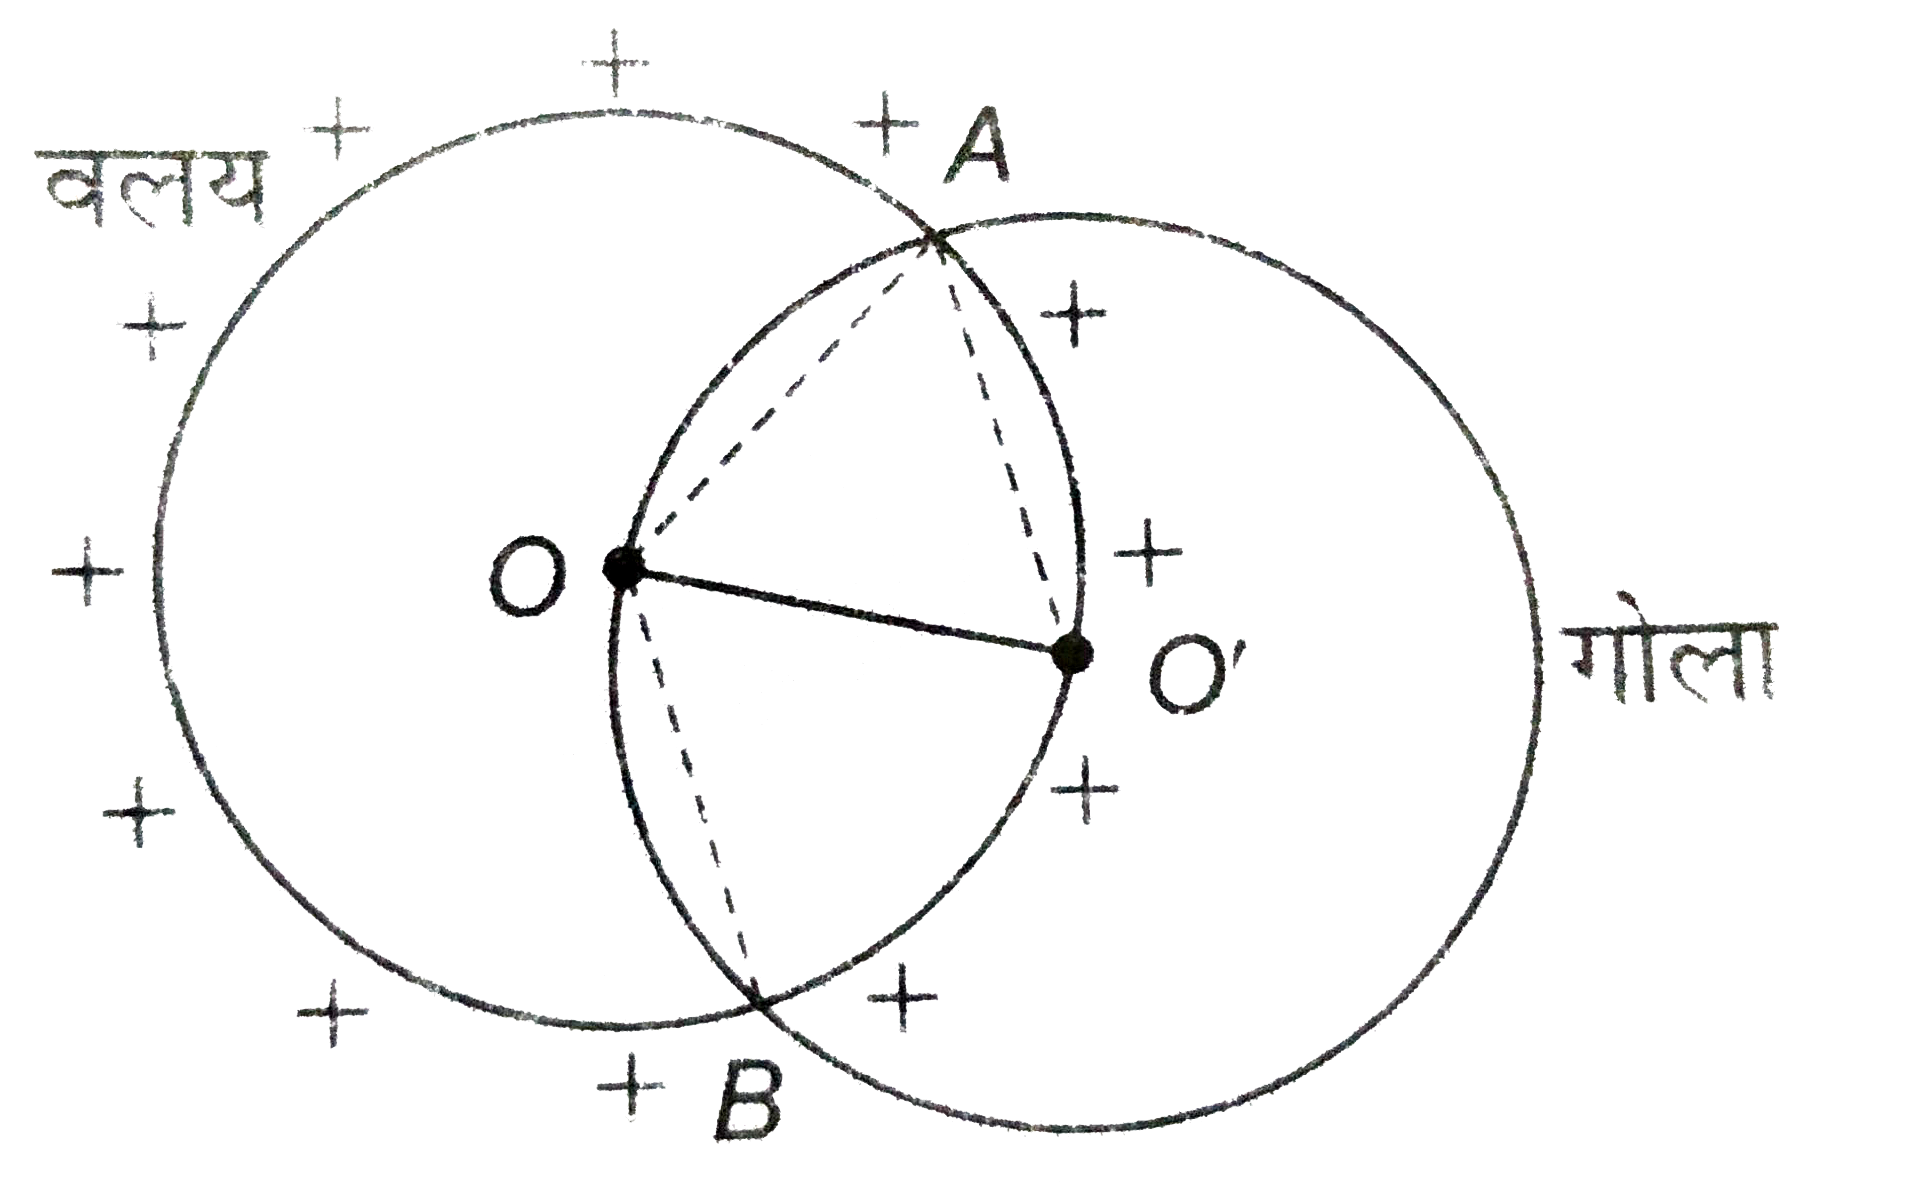 R त्रिज्या का एक गोला  इस  प्रकार खिंचा जाता है कि गोले  का केंद्र वलय की परिधि घर है (चित्र)। गोले के पृष्ठ से गुजरने  वाला वैधुत फ्लक्स ज्ञात कीजिए।